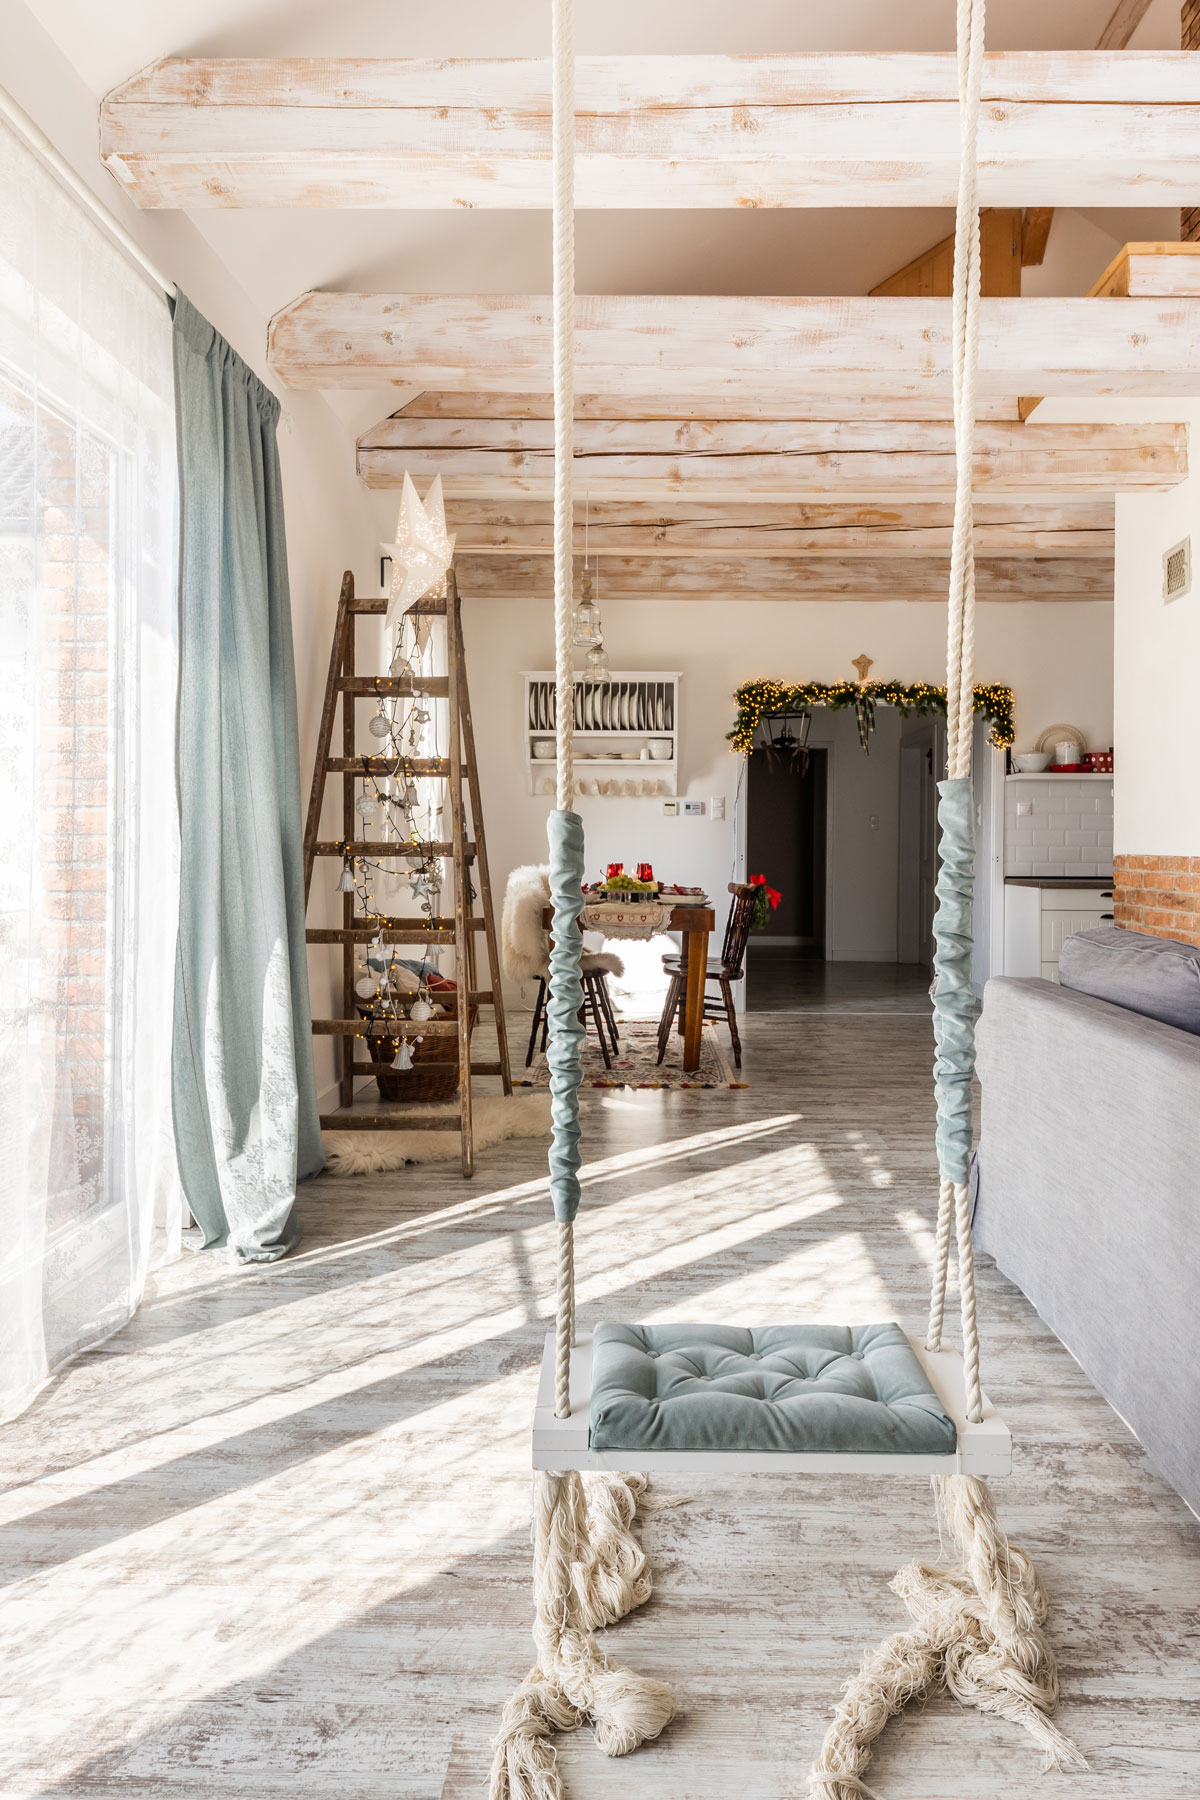 interiér v rodinnom dome s boho hojdačkou, ktorá visí z drevených trámov, v pozadí vidieť áčkový rebrík, na ktorom je vianočná hviezda a svetielka